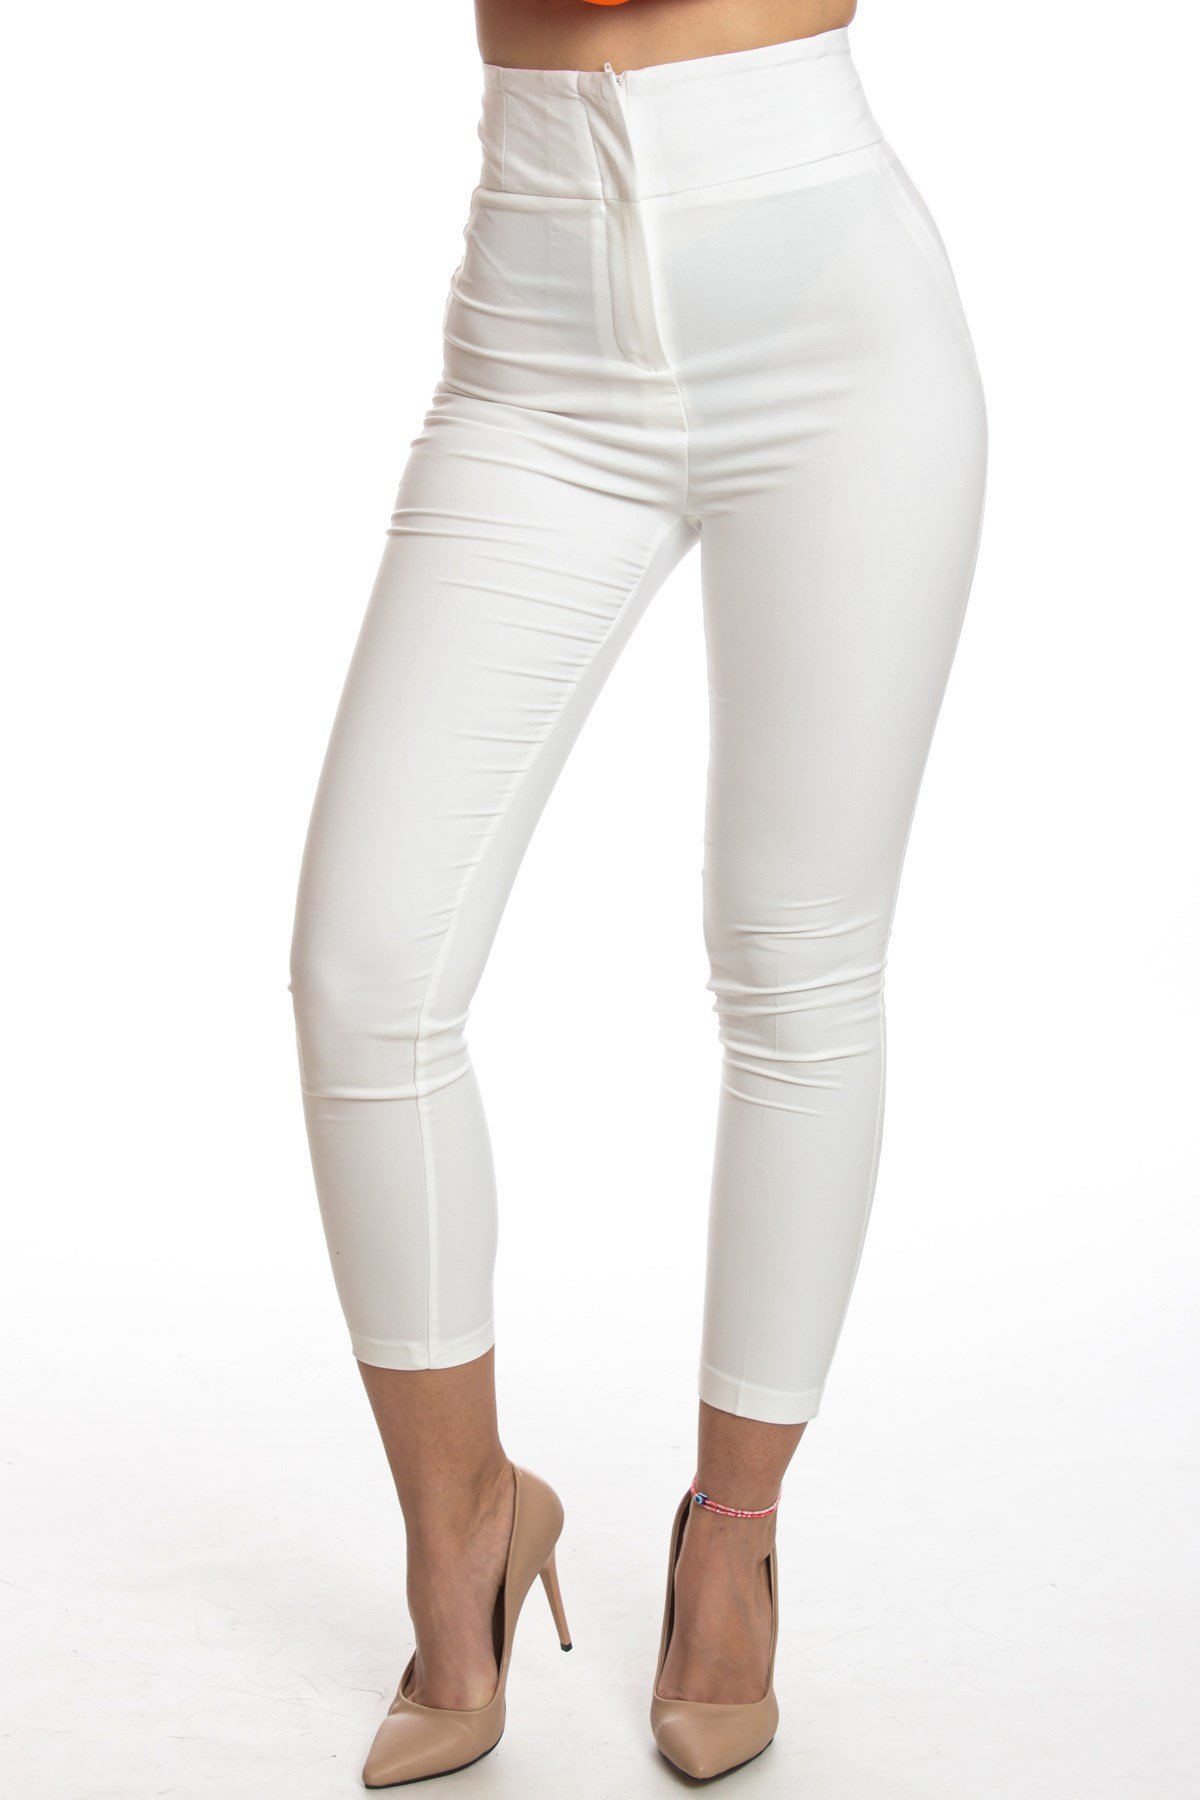 Kadın Dar Paça Yüksek Geniş Kemer Model Esnek Beyaz Pantolon  www.denfamoda.com.tr